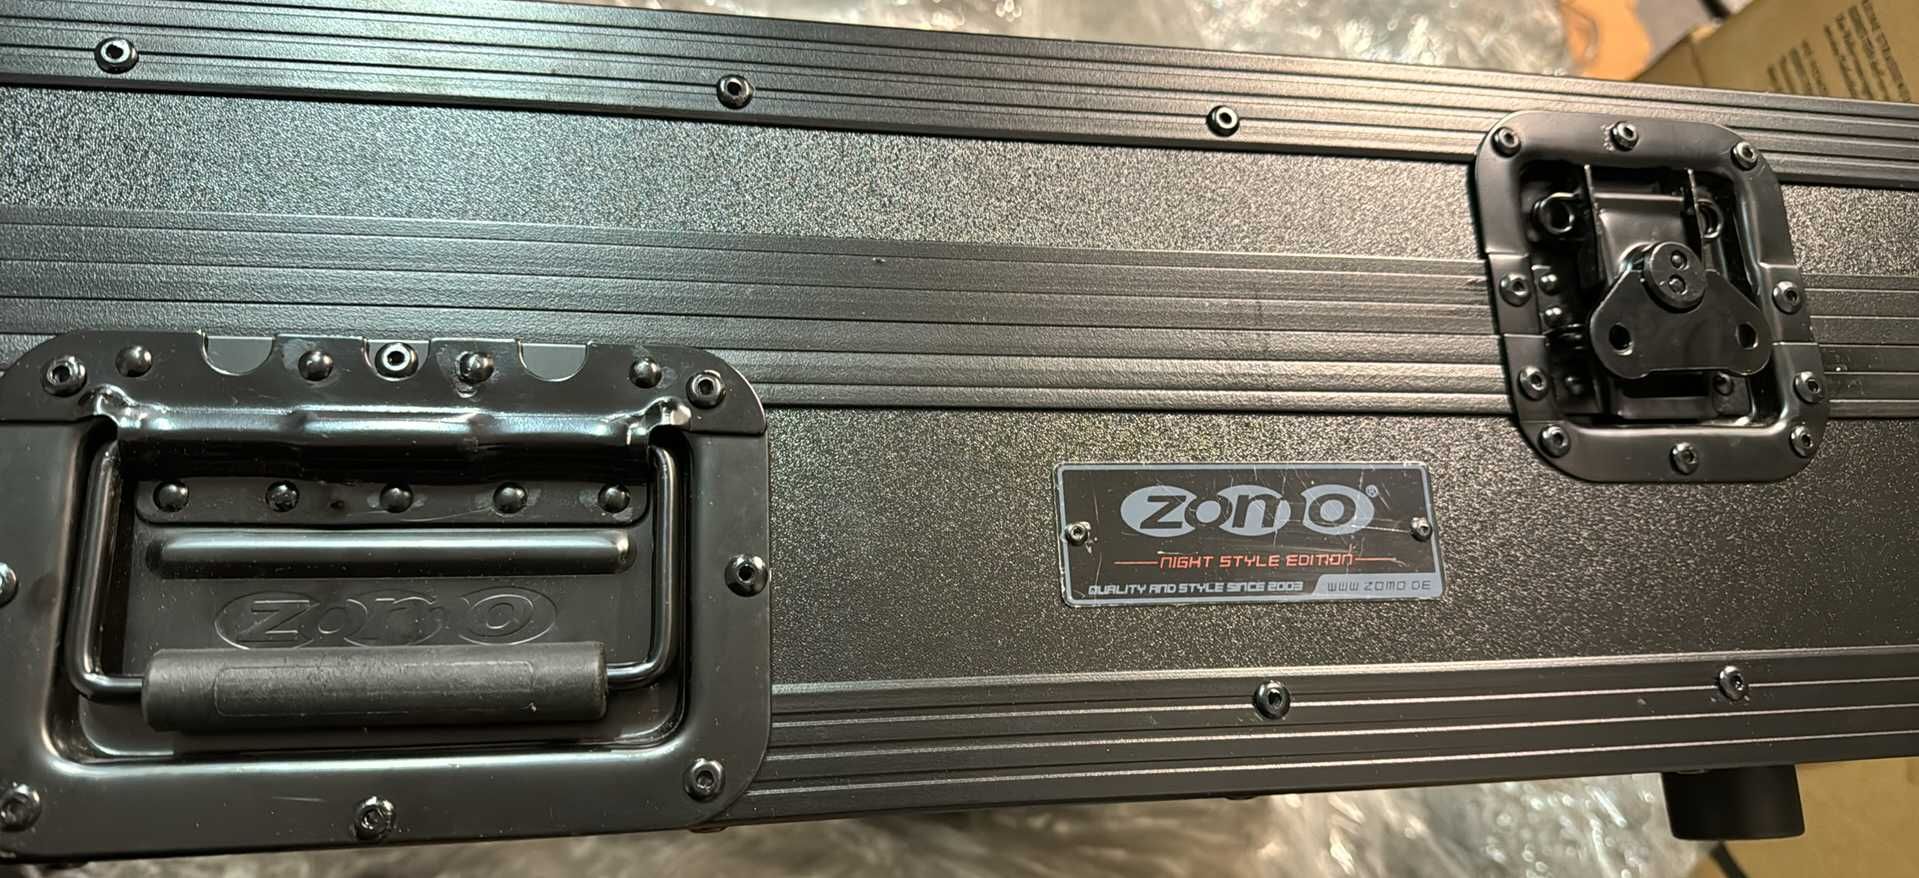 Zomo Zestaw 700 NSE WALIZKA CASE FLIGHTCASE do 2xPioneer XDJ-700 +